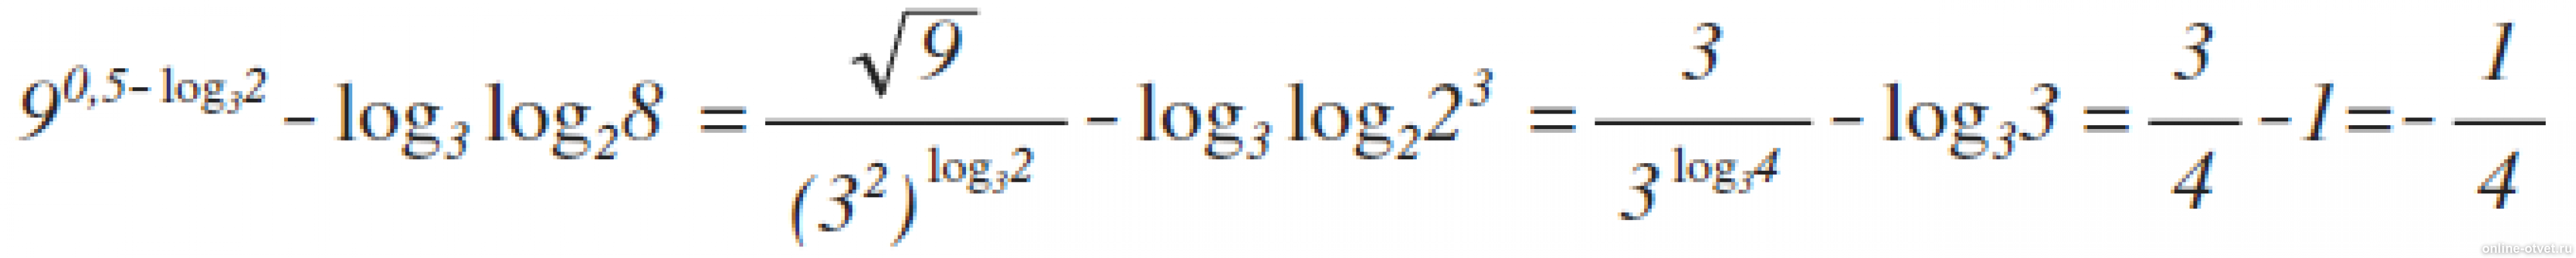 Log 5 9x 2. 9 В степени 0.5 log 3 2 log3. Лог x по основанию корень из 3. Log 25 по основанию корень из 2. Log2 log2 корень 4 степени из 2.